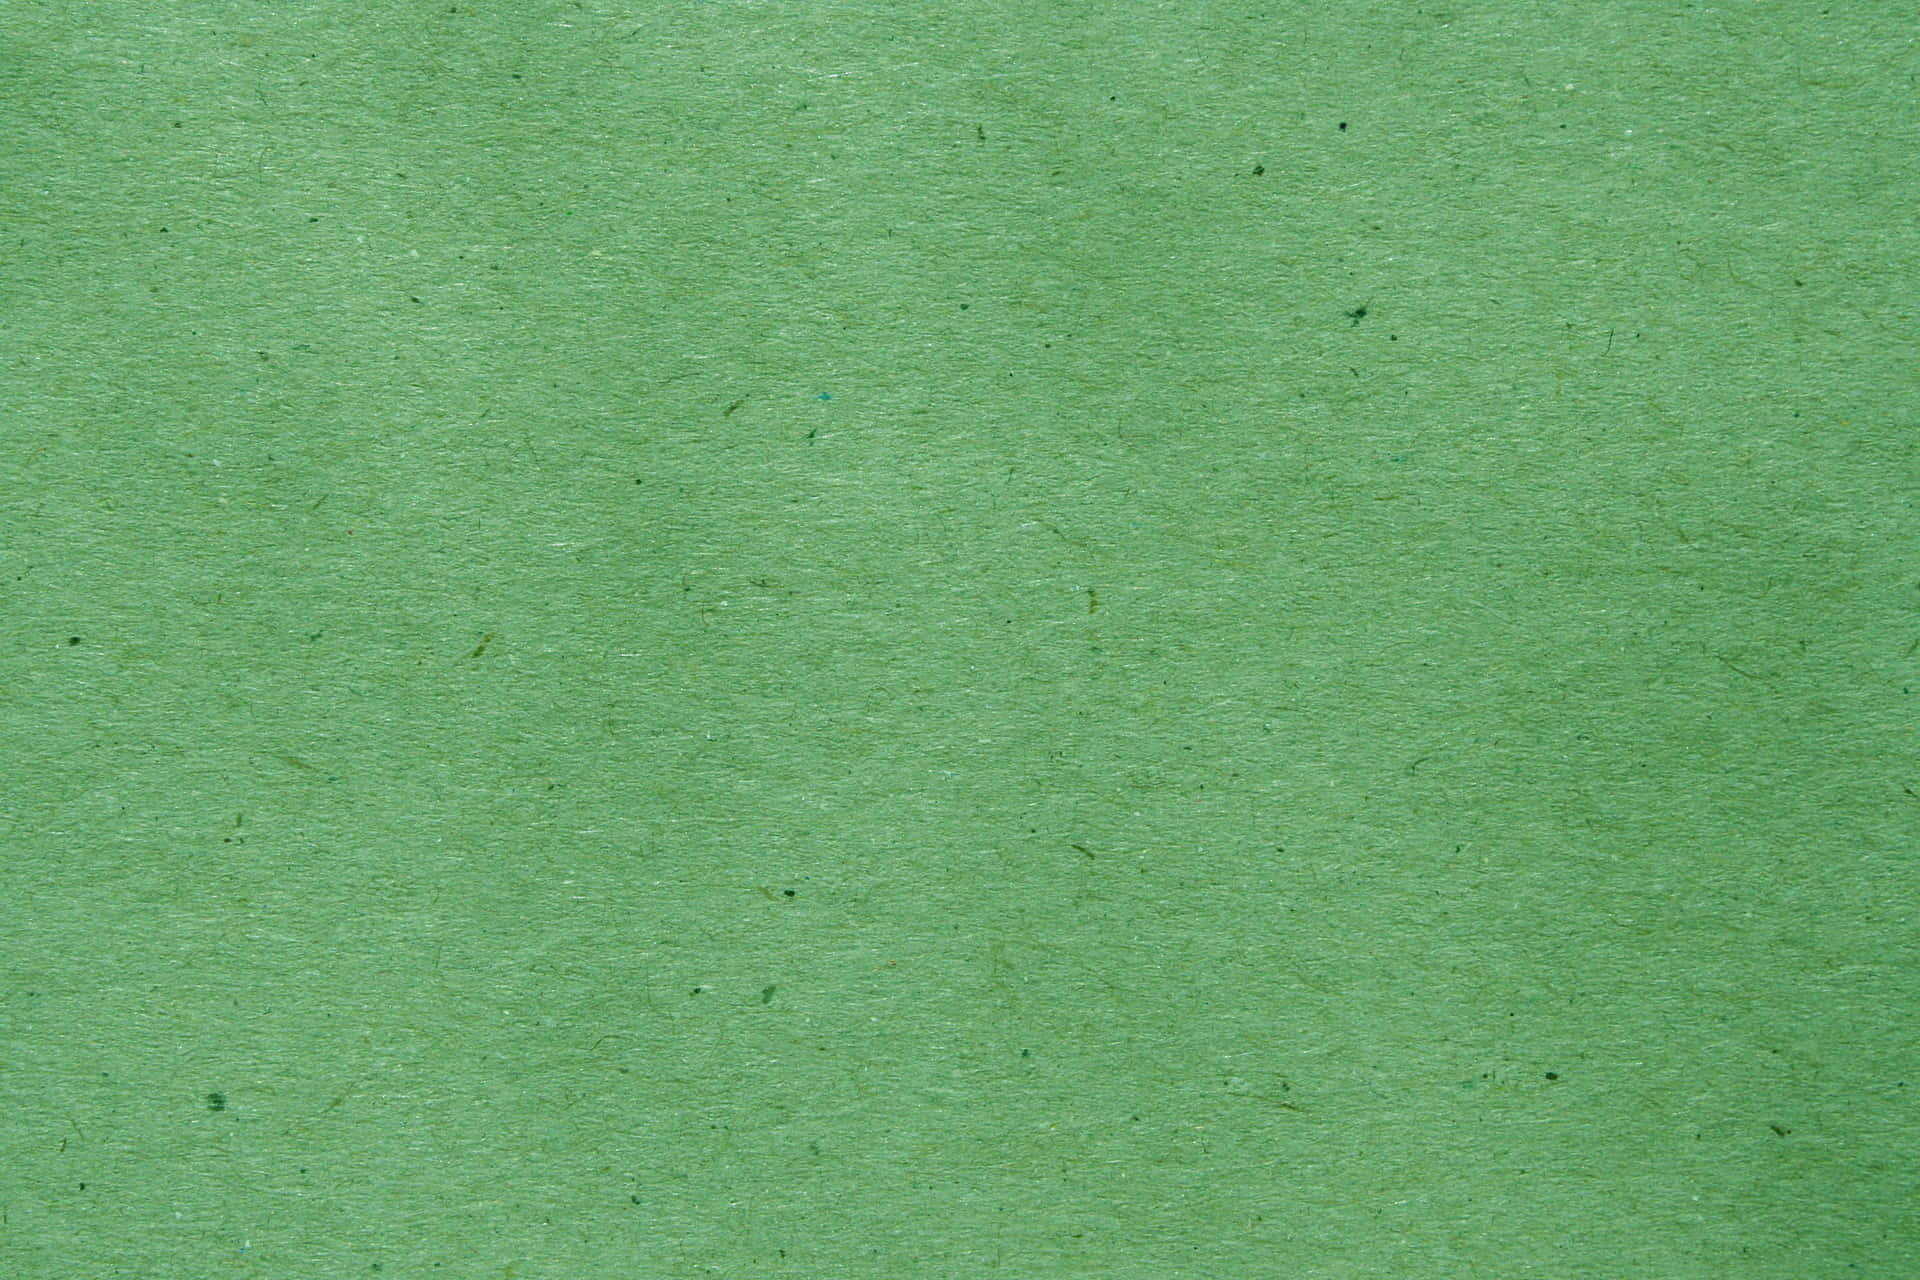 Green Texture 3888 X 2592 Wallpaper Wallpaper